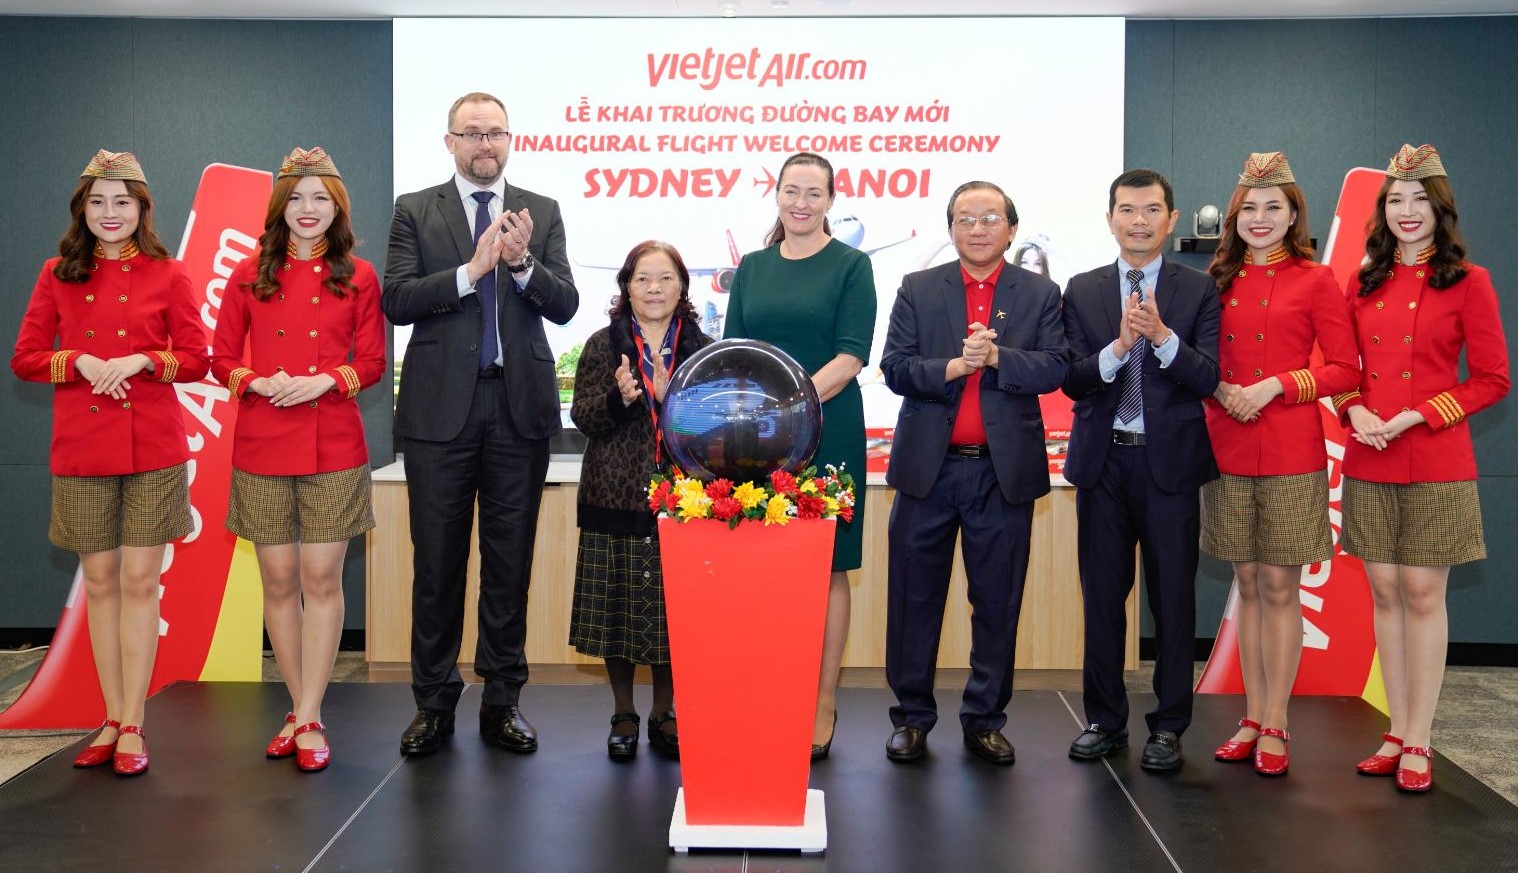 Các đại biểu, khách mời chúc mừng khai trương đường bay Sydney - Hà Nội của Vietjet - Ảnh: Vietjet